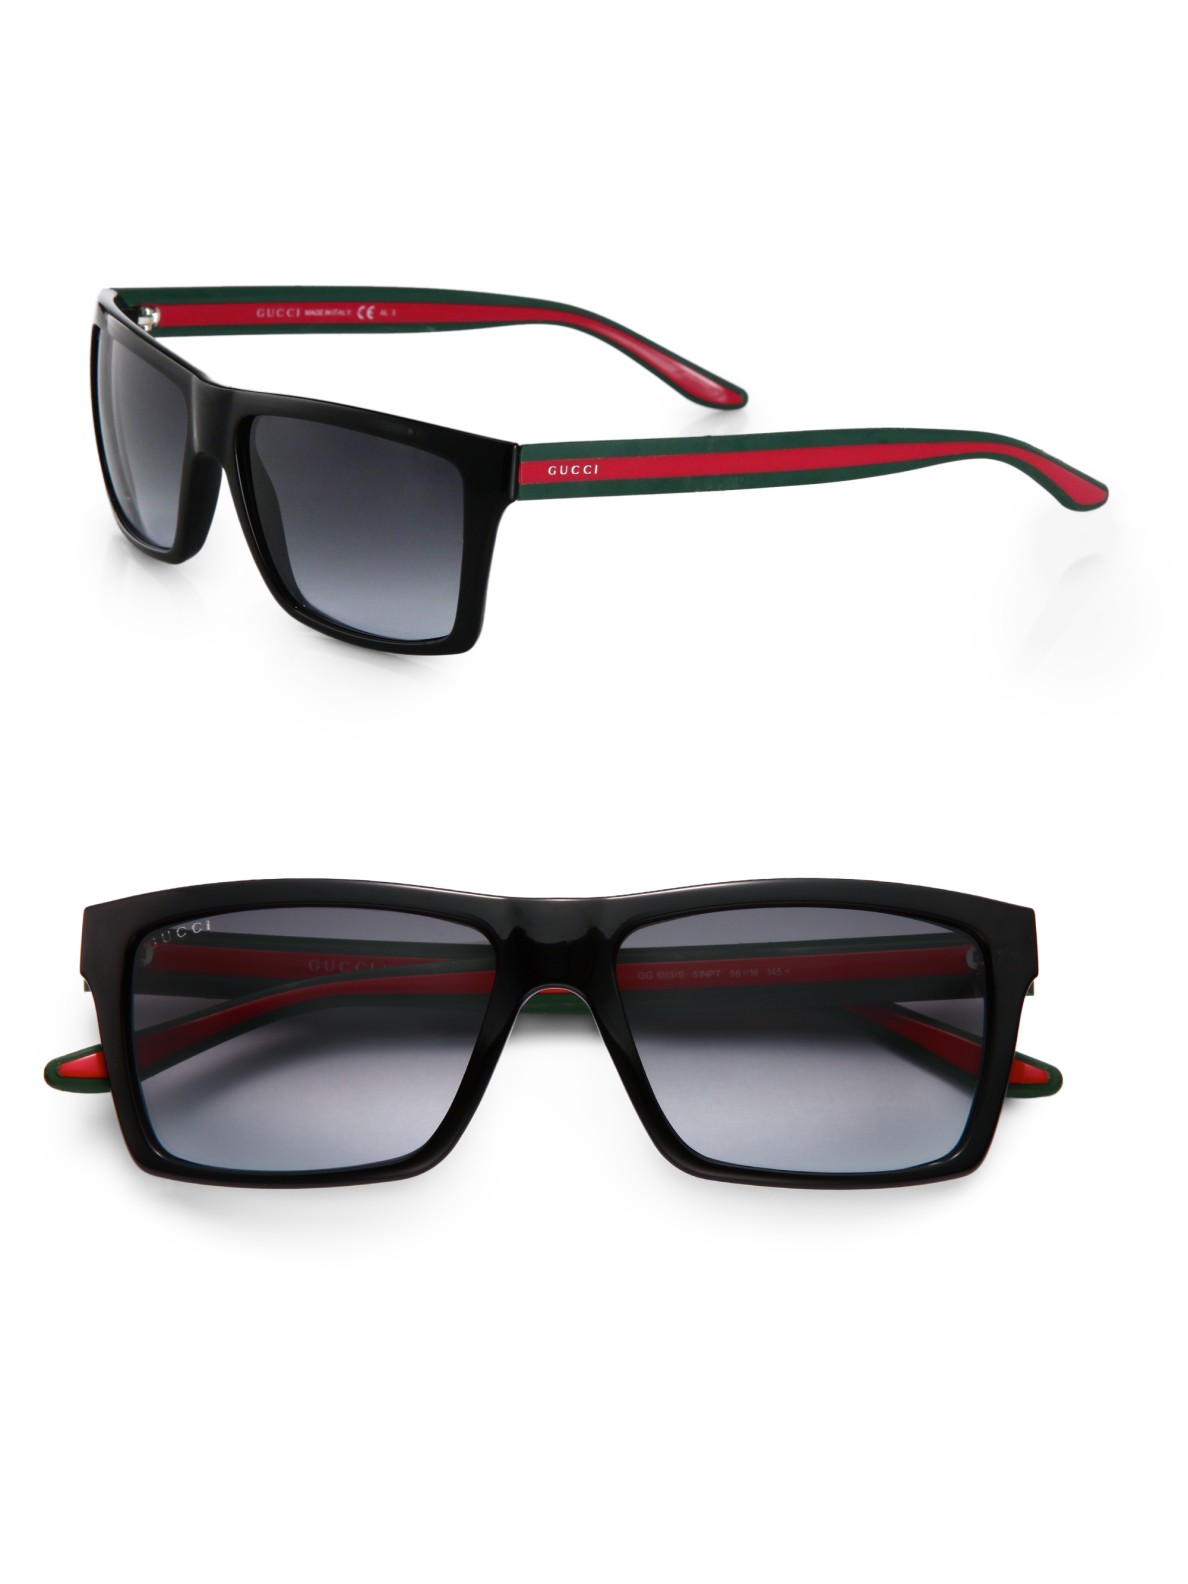 gucci sunglasses red stripe